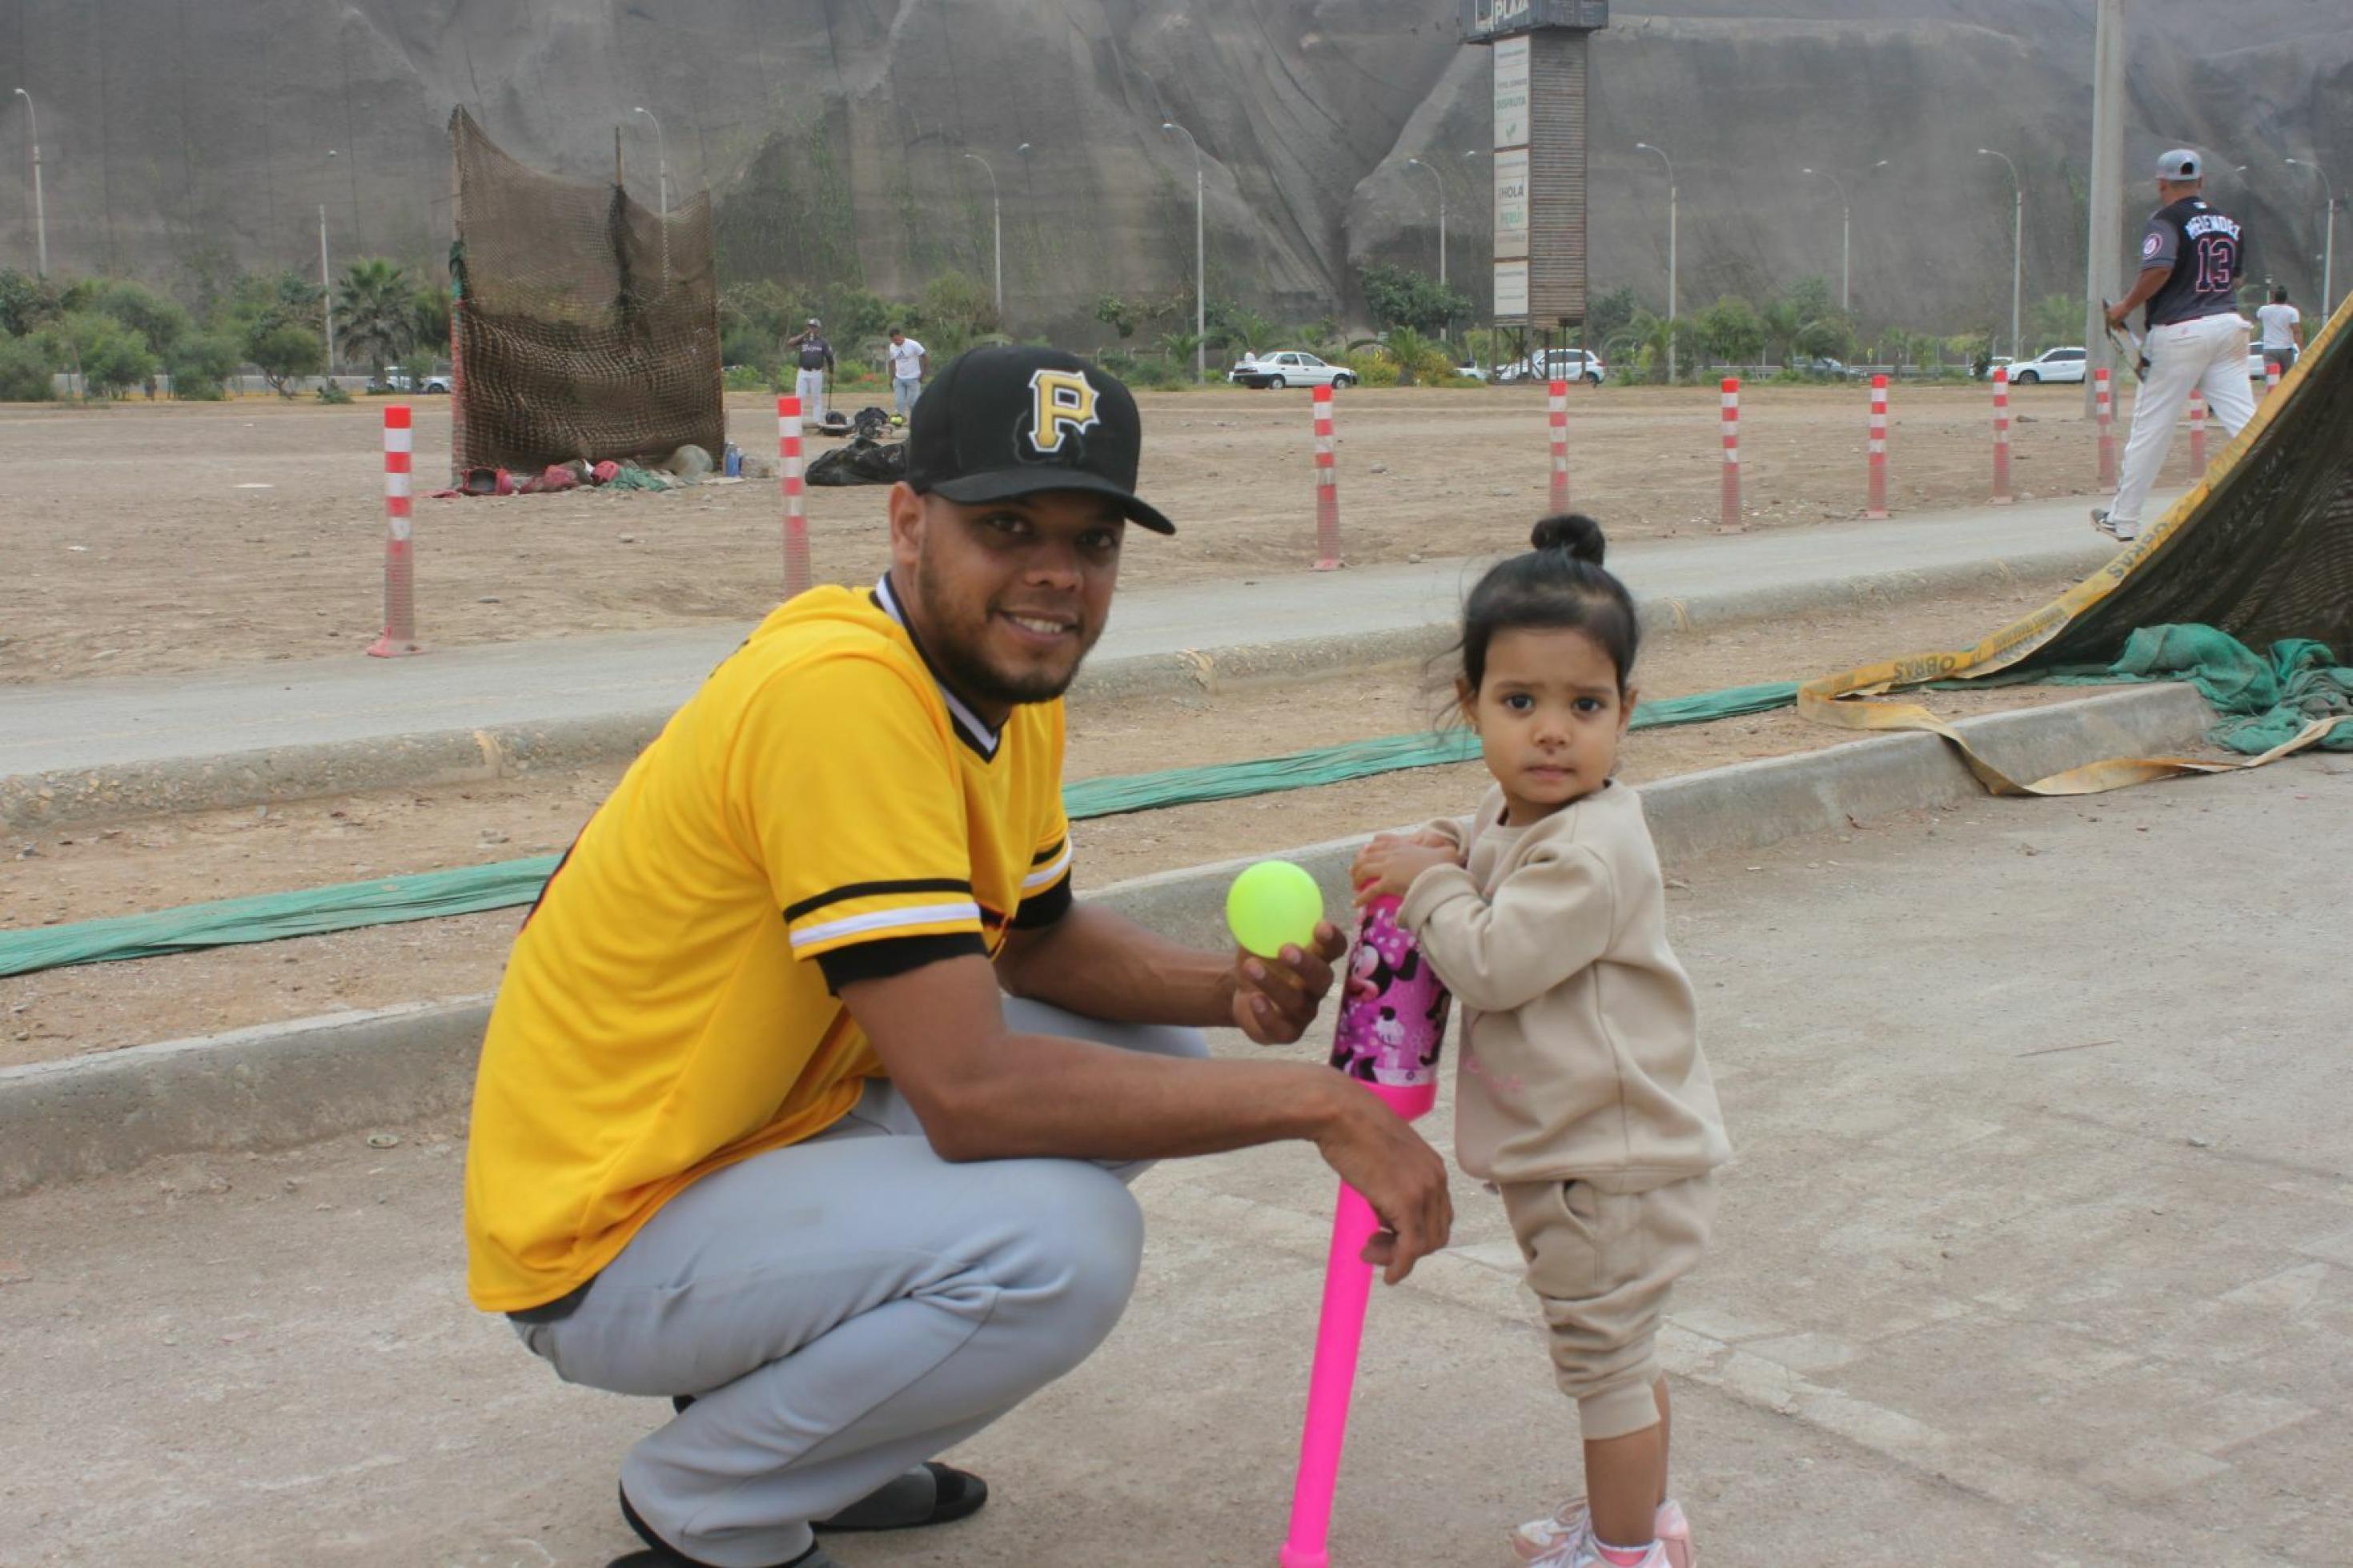 Links kniet ein junger Mann, braune Haut und Bart, mit Baseball-Mütze, vor ihm ein zweijähriges Mädchen, das in die Kamera lacht. Das Mädchen hält einen Mini-Plastik-Baseballschläger in der Hand. Der Mann zeigt ihr den gelben Ball.